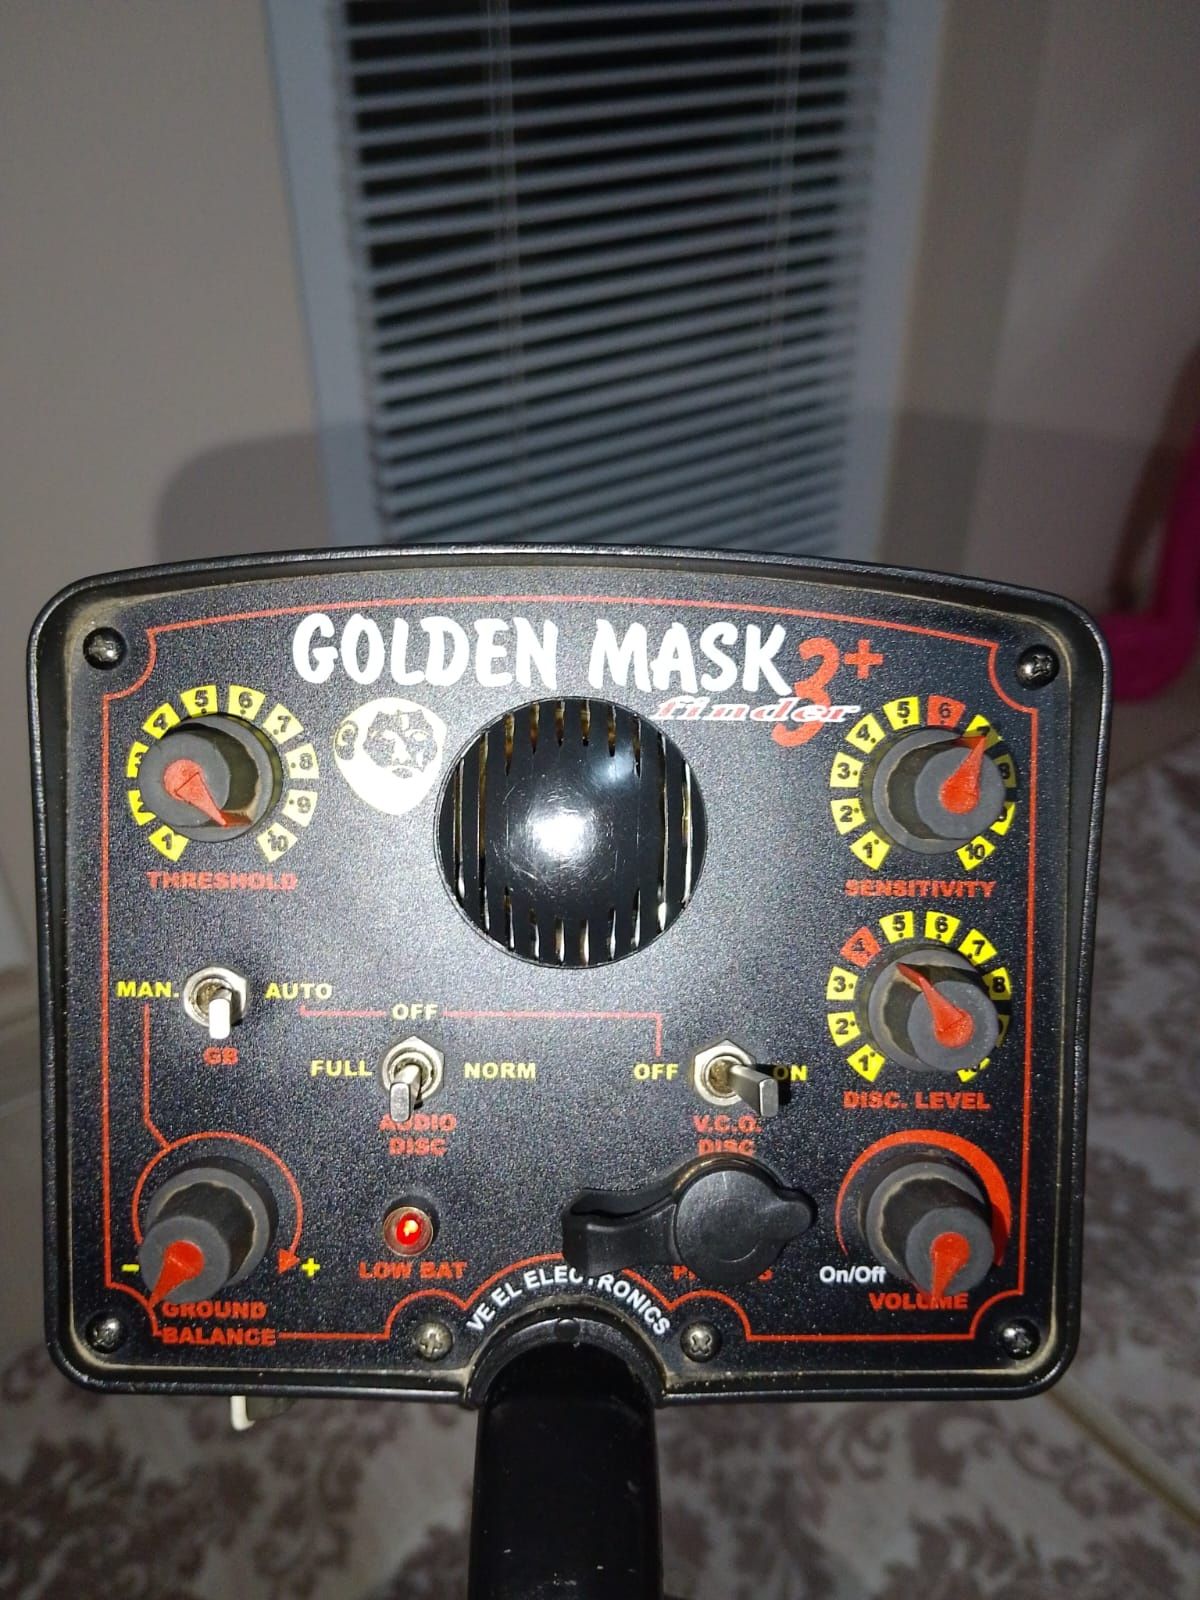 Металдетектор GOLDEN MASK 3+ FINDER